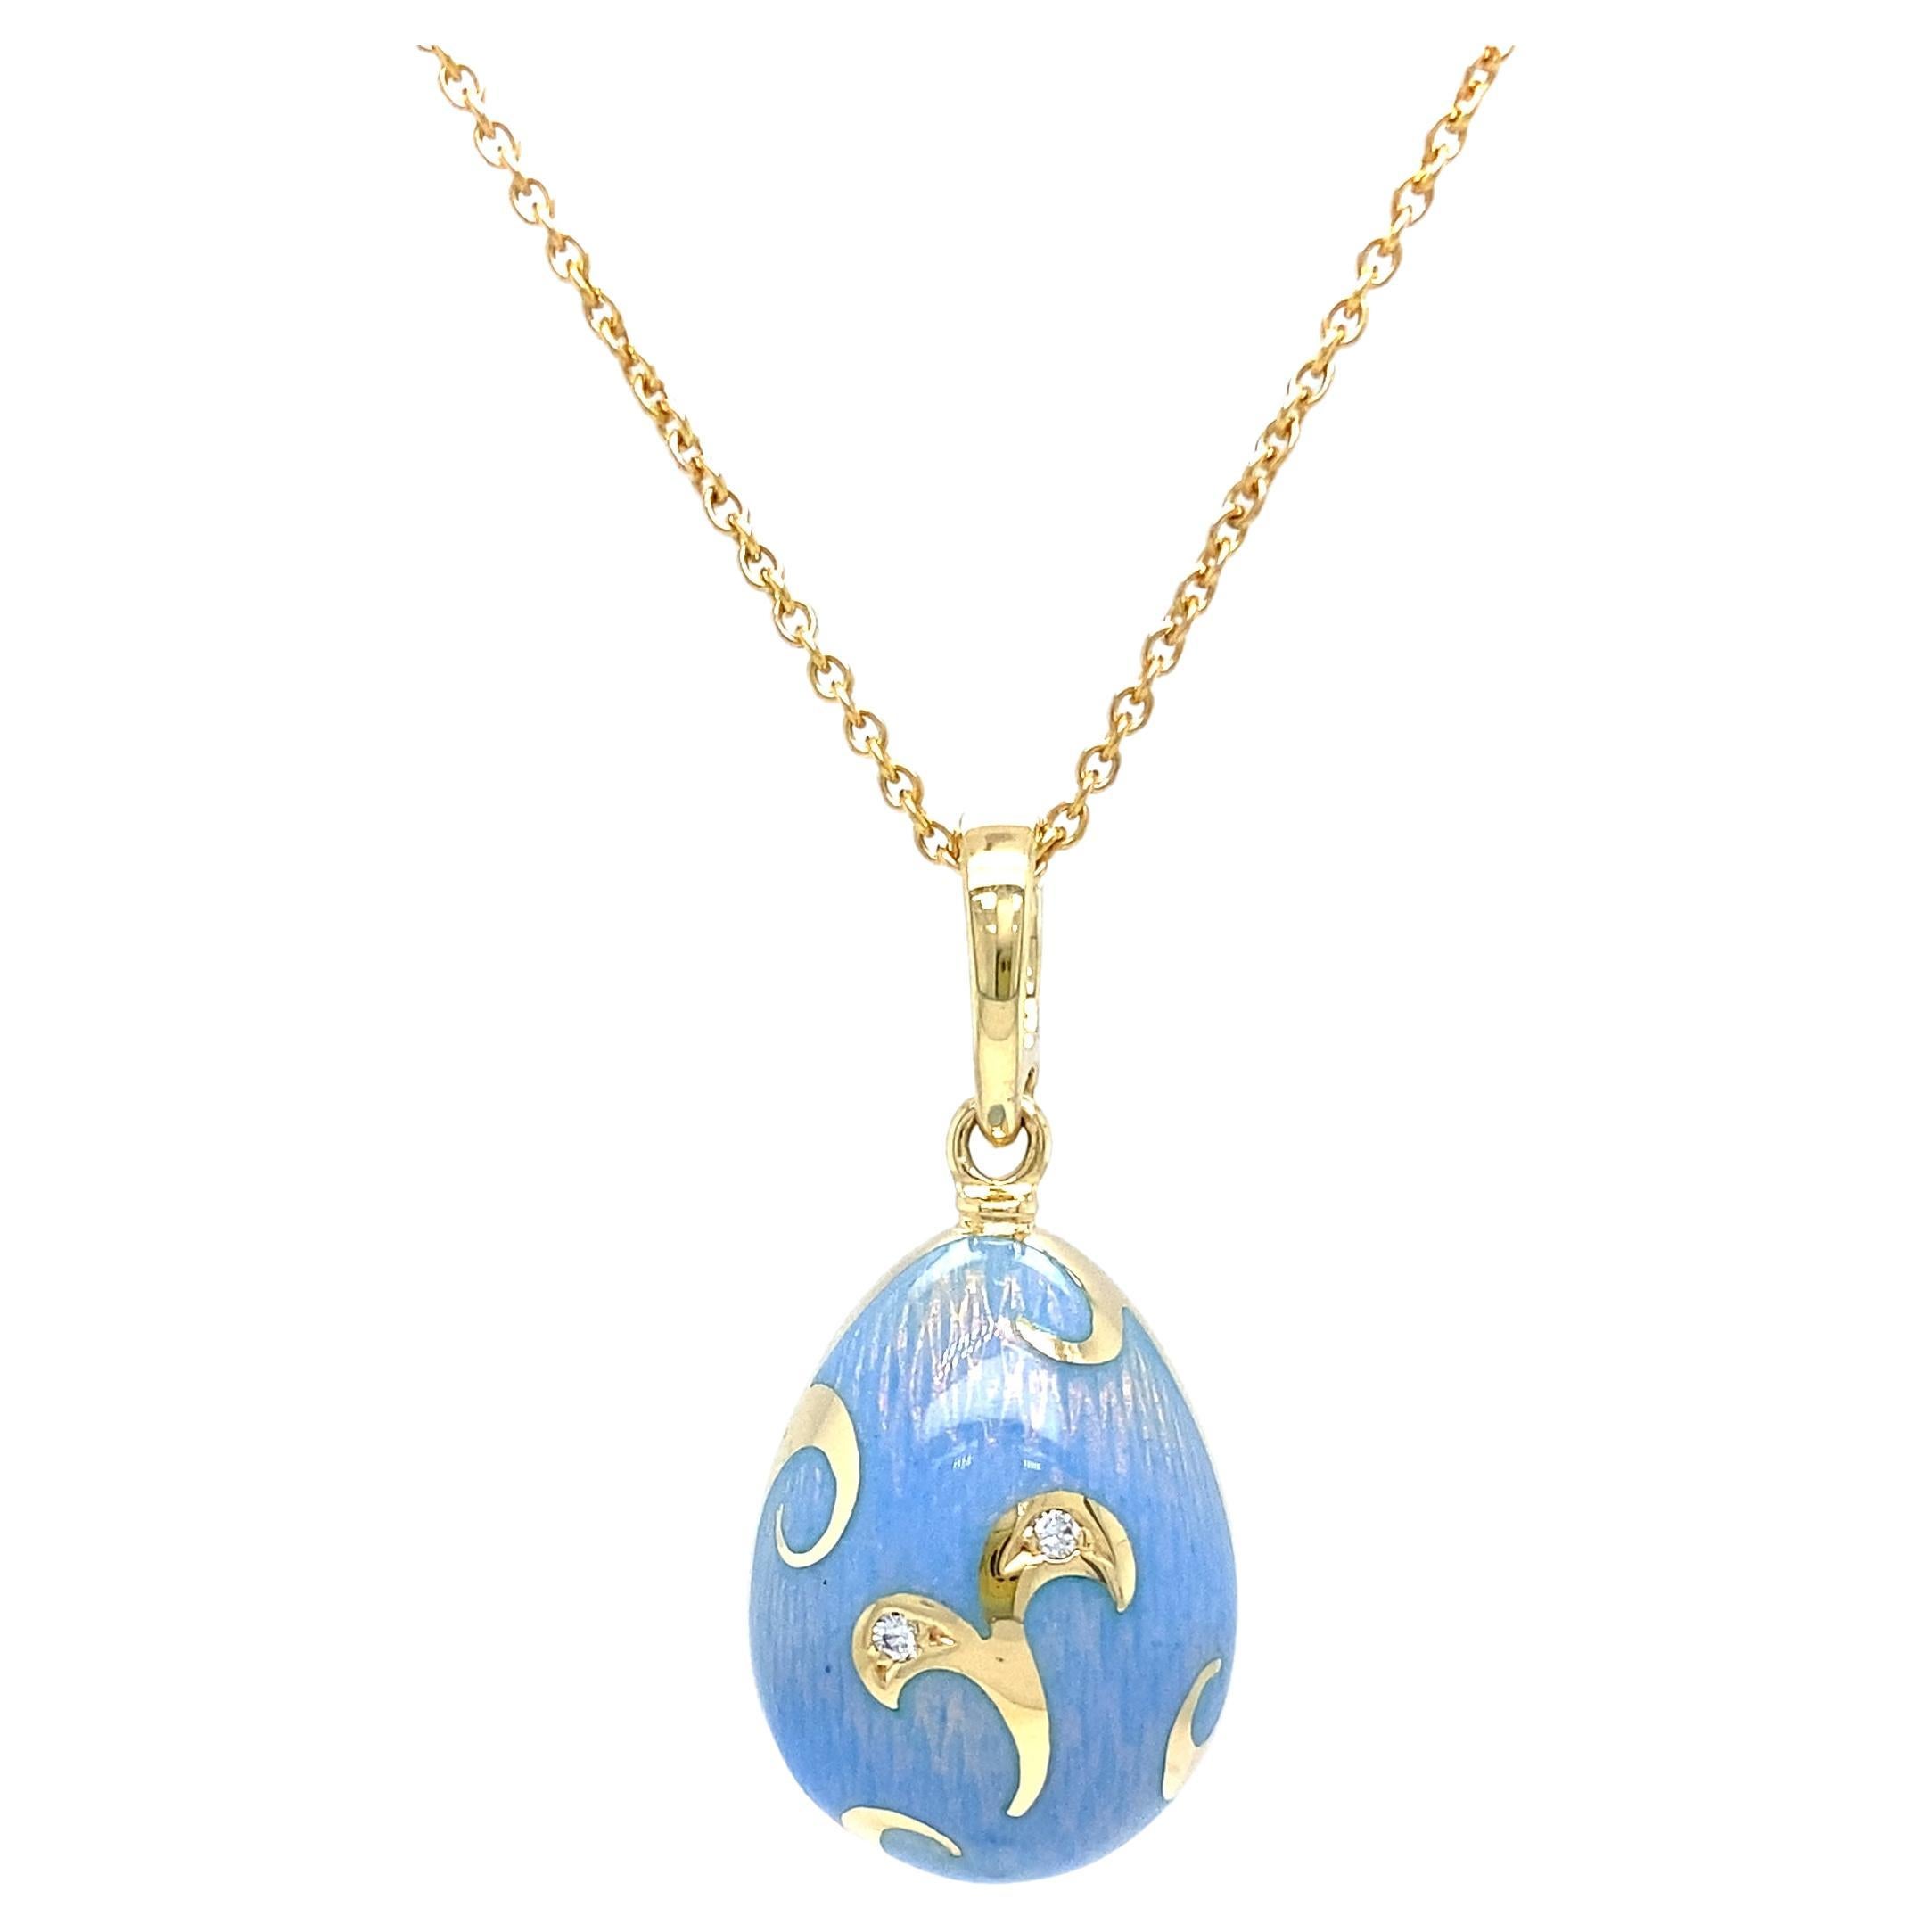 Fabergé Egg Pendant Necklace Blue Opalescent Enamel 18k Yellow Gold 2 Diamonds